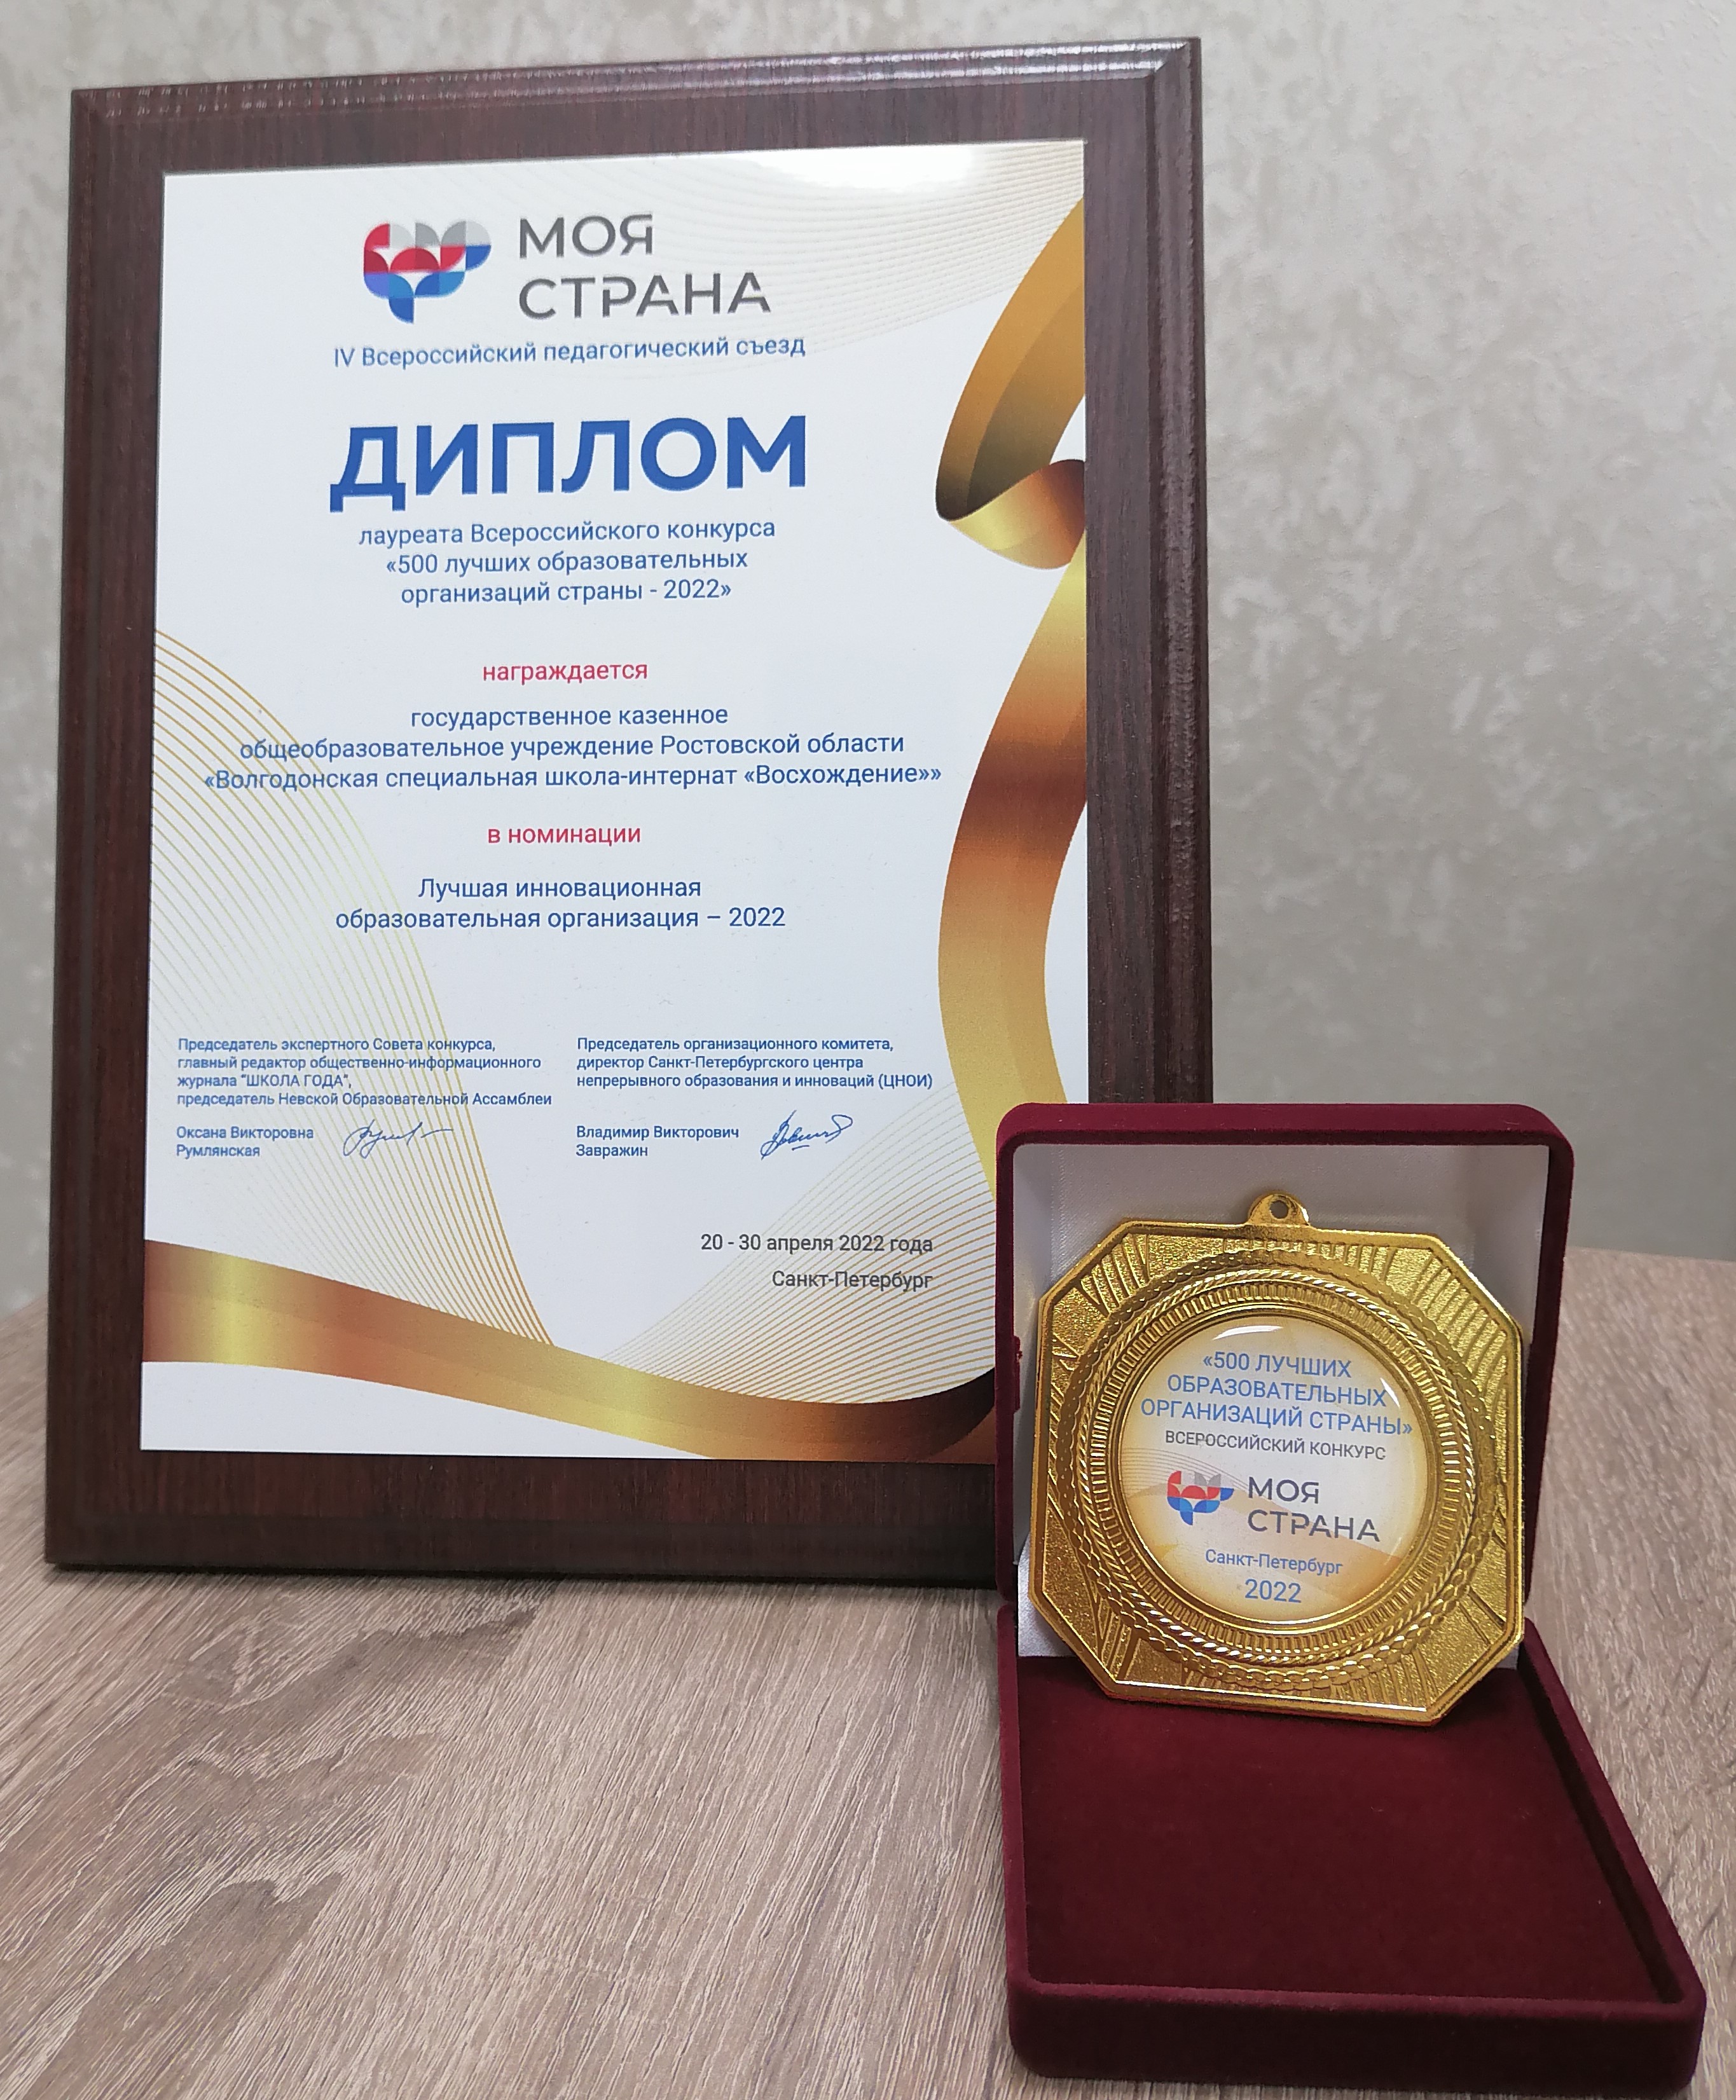 Победа во Всероссийском конкурсе «500 лучших образовательных  организаций страны – 2022»